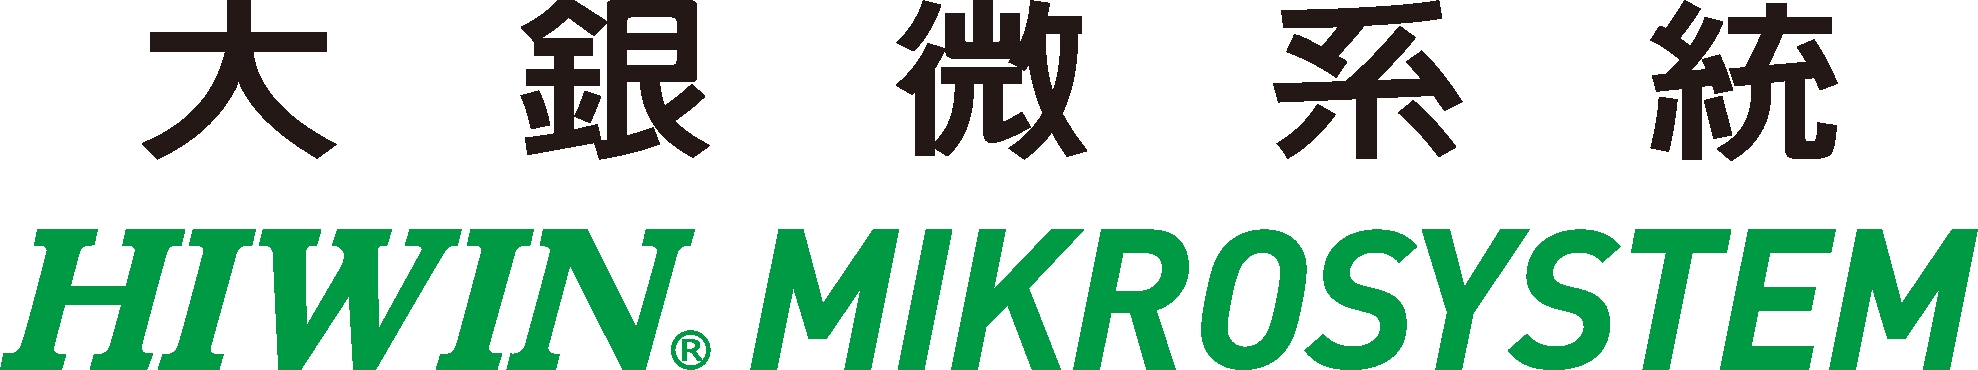 大銀微系統股份有限公司-Logo